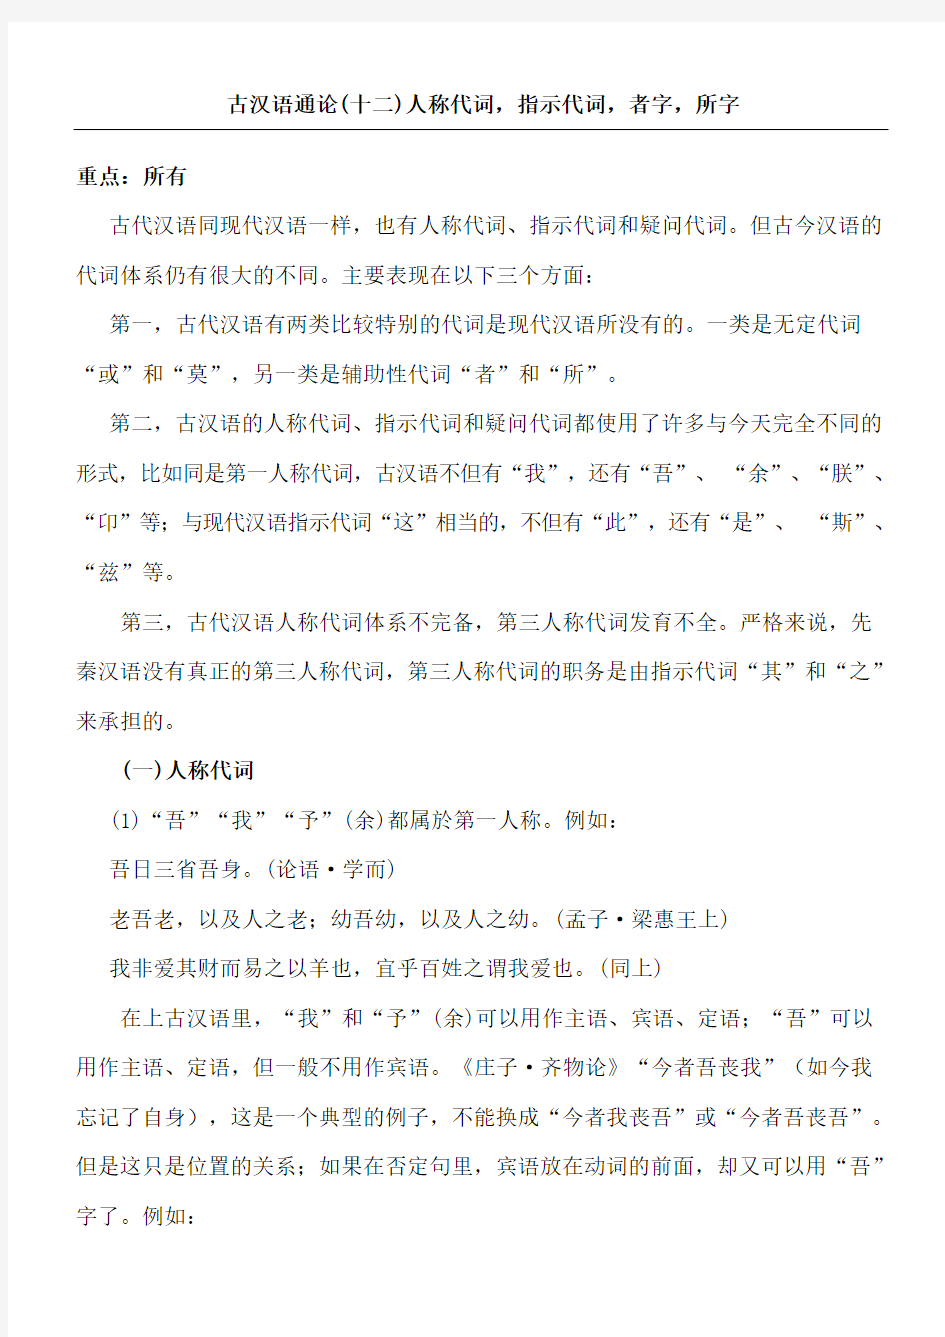 古汉语通论十二人称代词指示代词者字所字